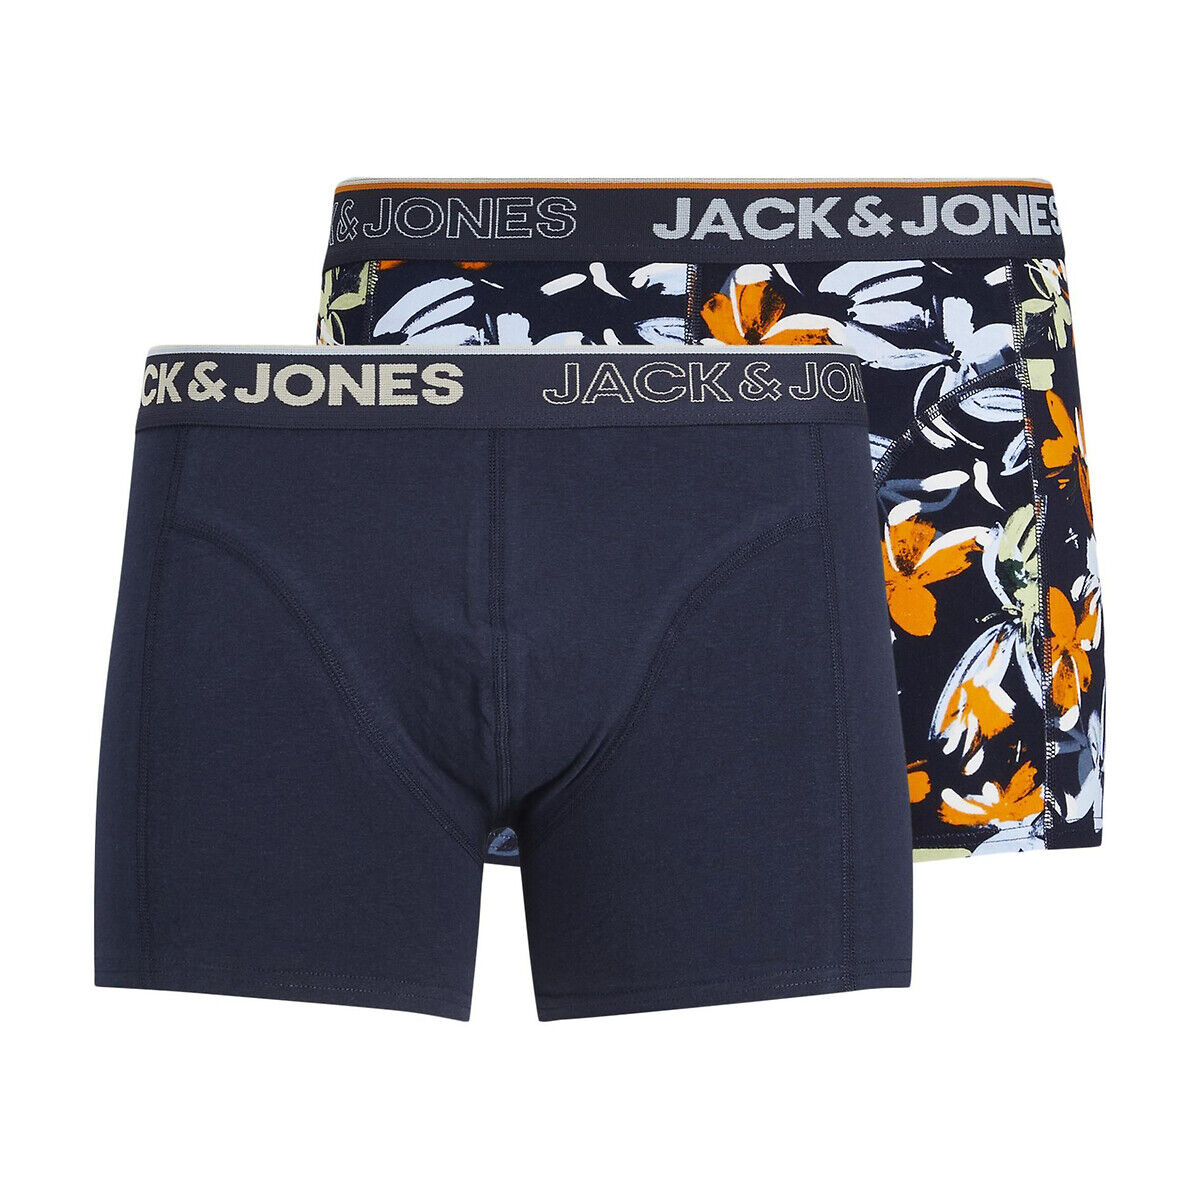 JACK & JONES Lot de 2 boxers (1 uni + 1 imprimé)